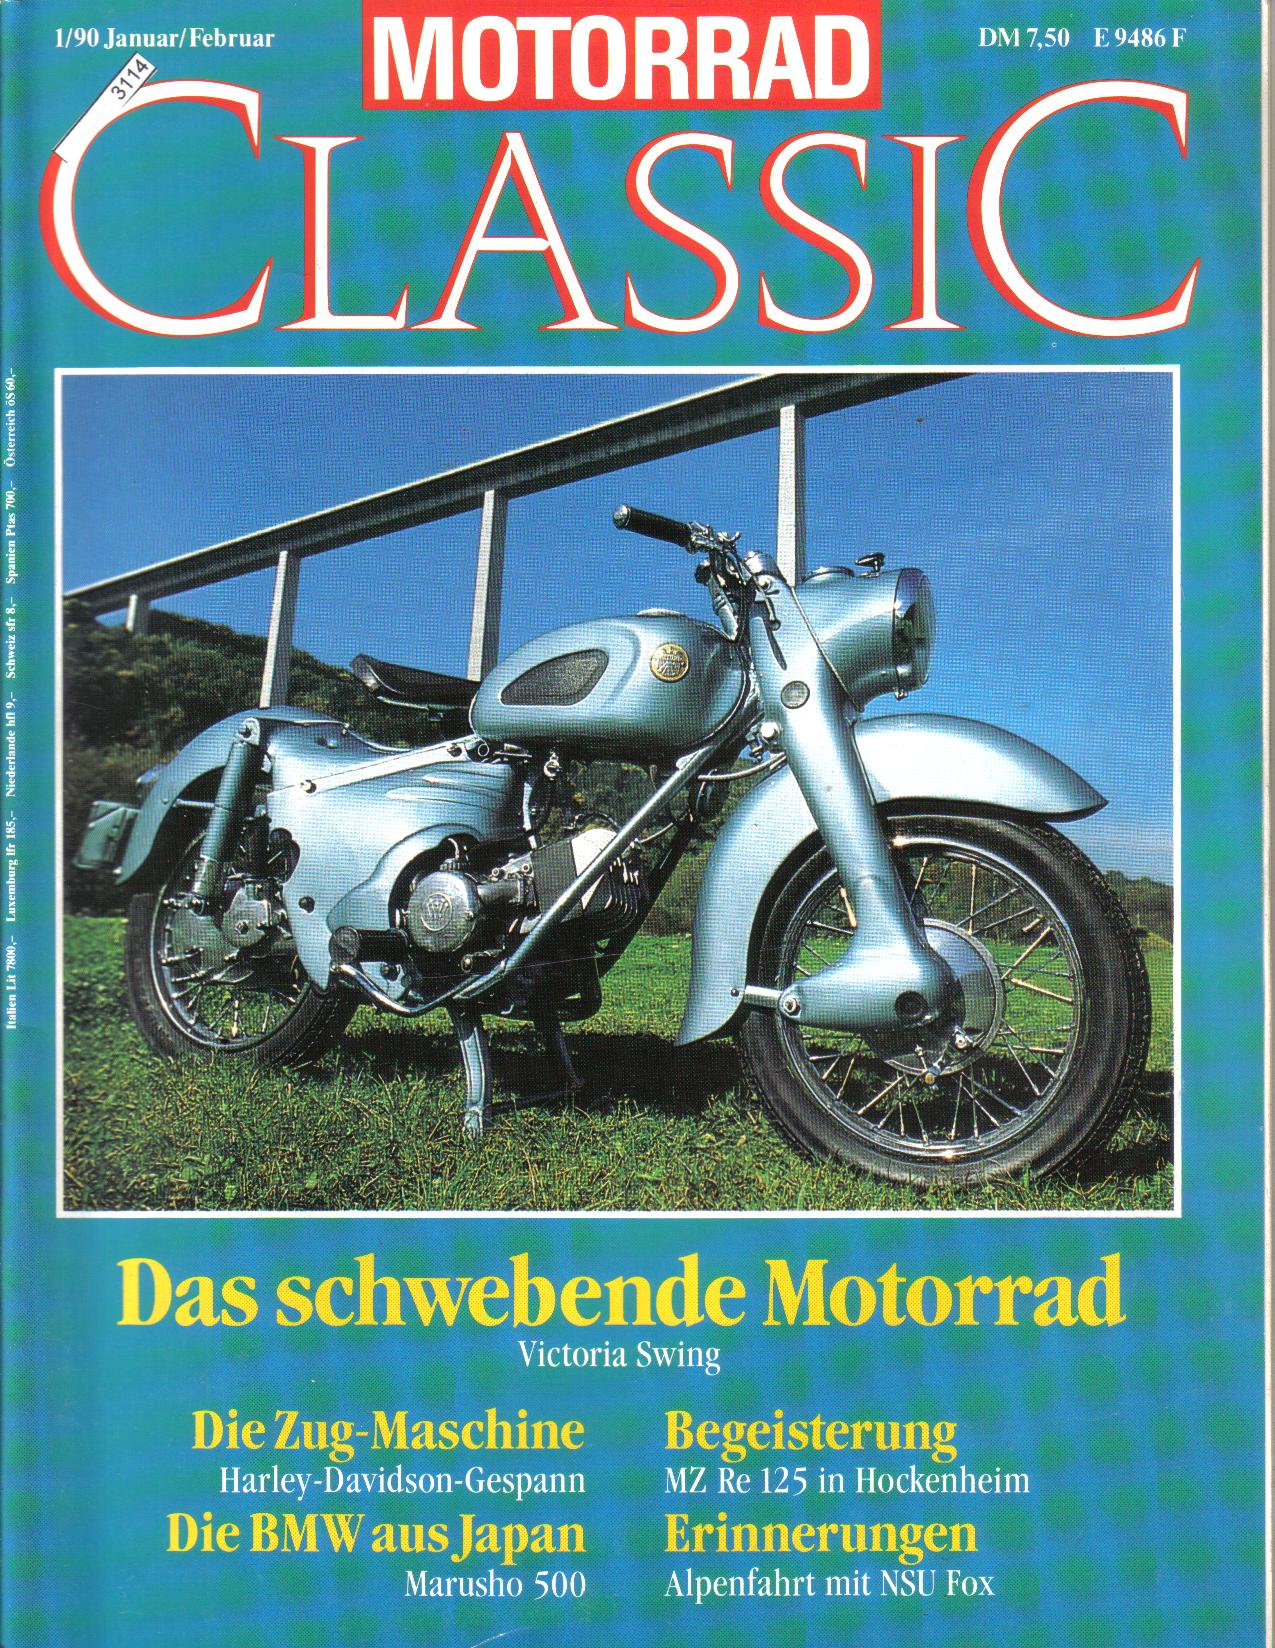 MOTORRAD  CLASSICAusgabe 1/90